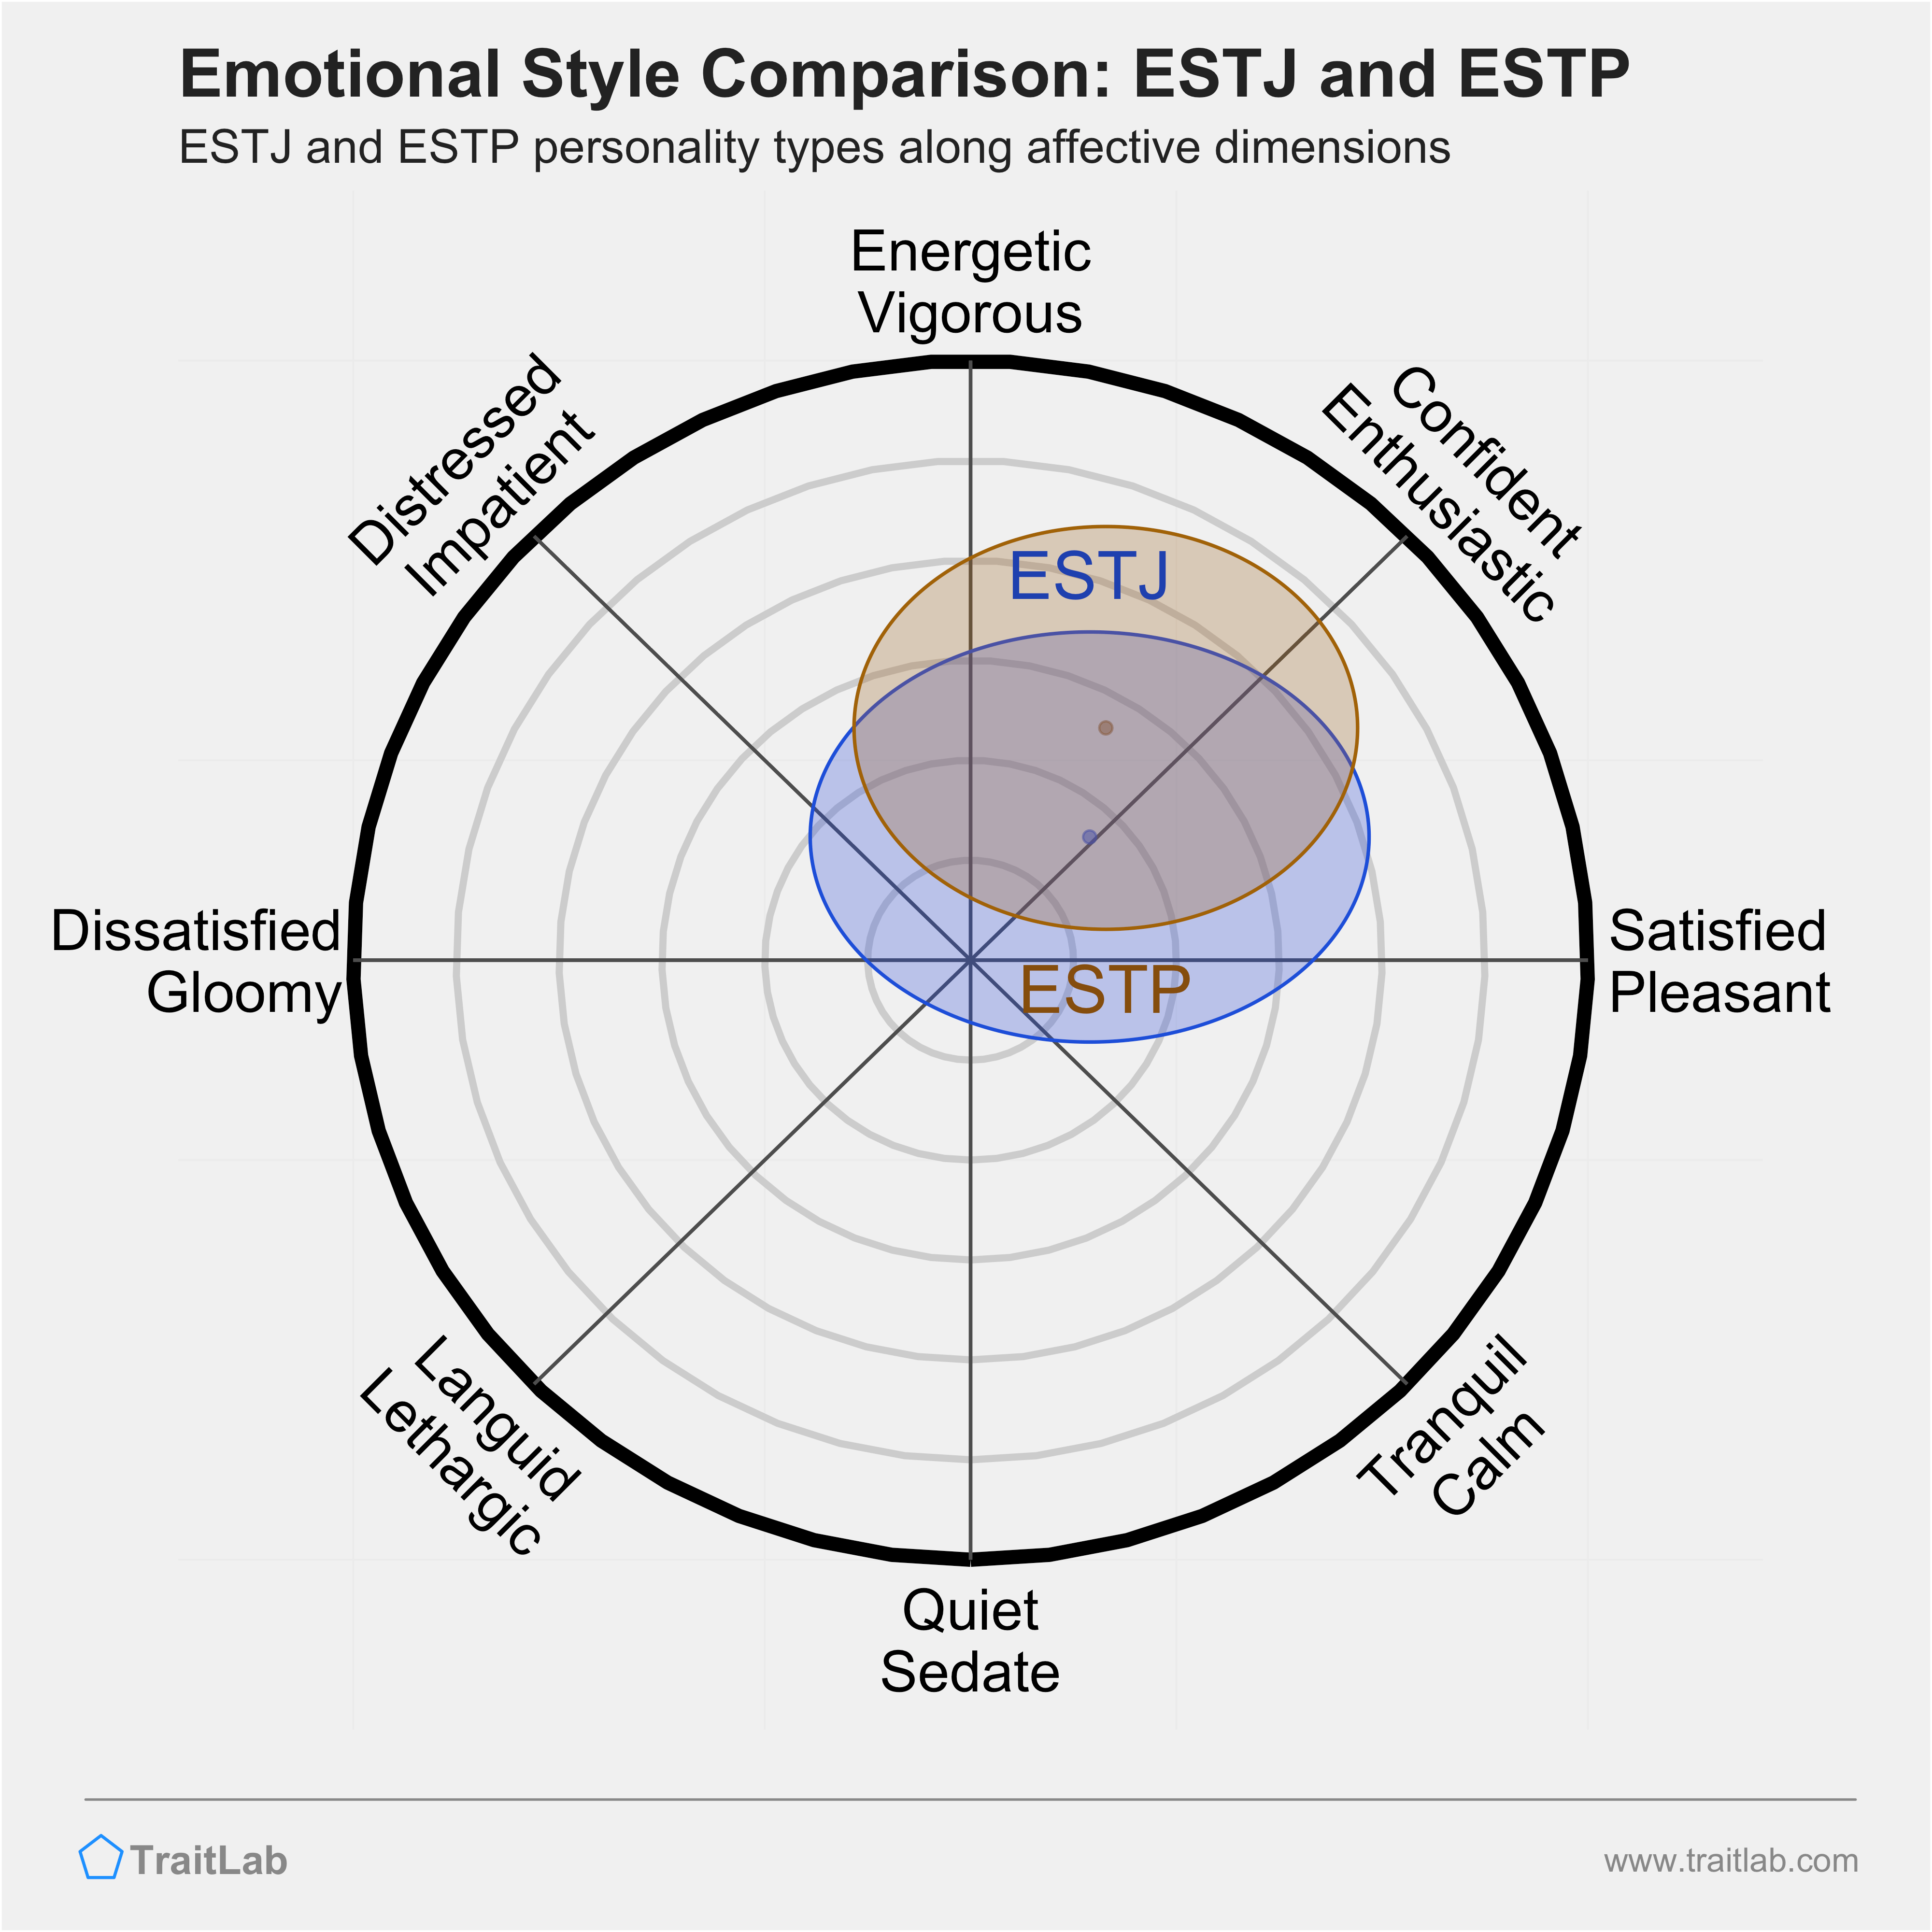 ESTJ and ESTP comparison across emotional (affective) dimensions